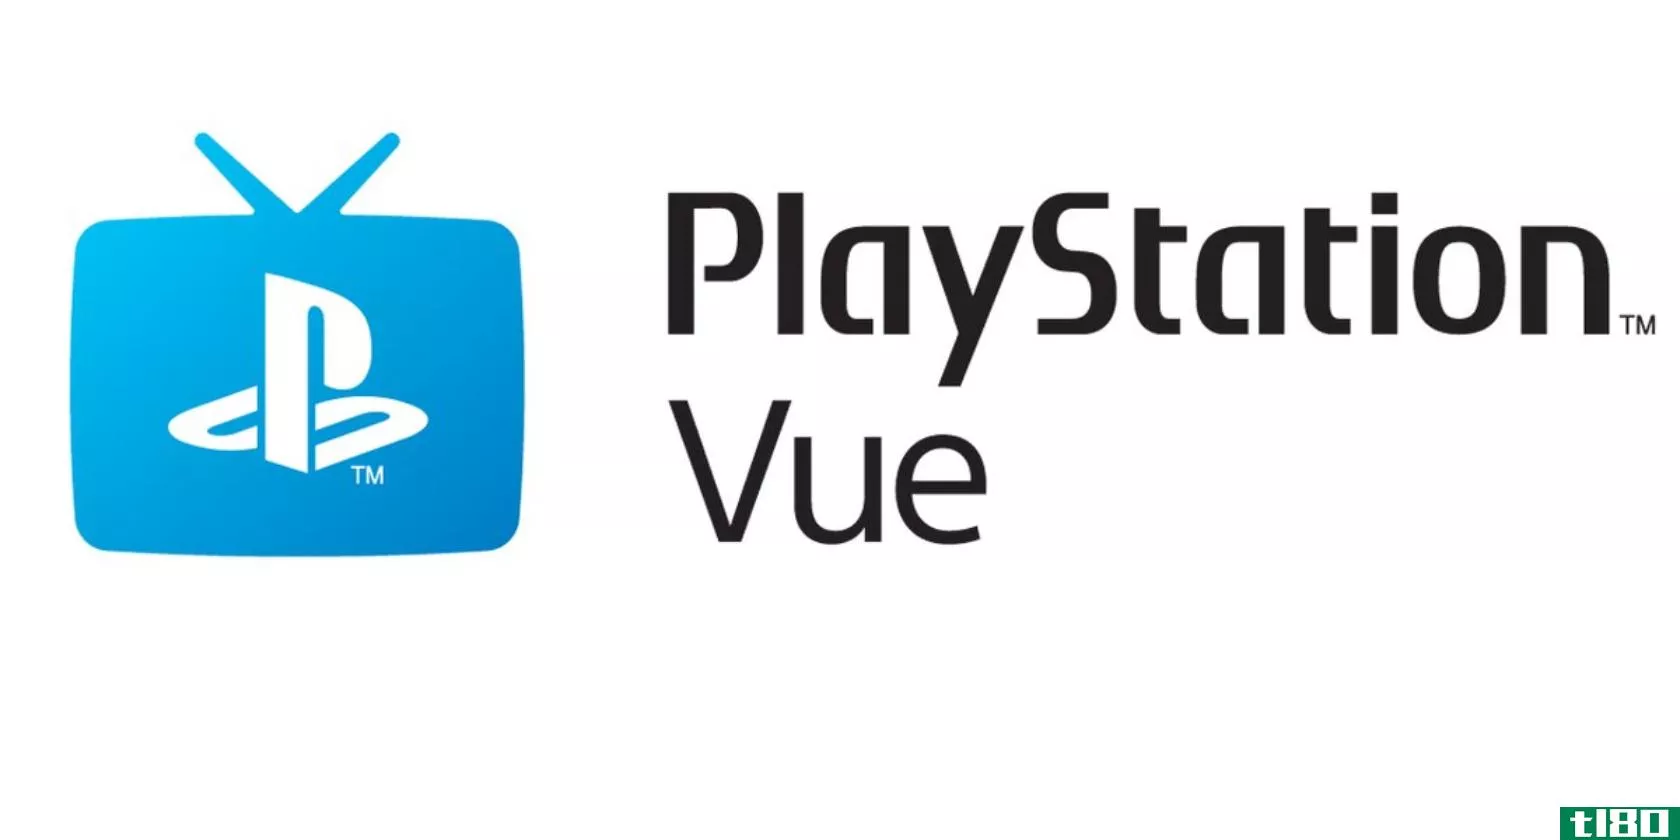 playstation-vue-logo-2